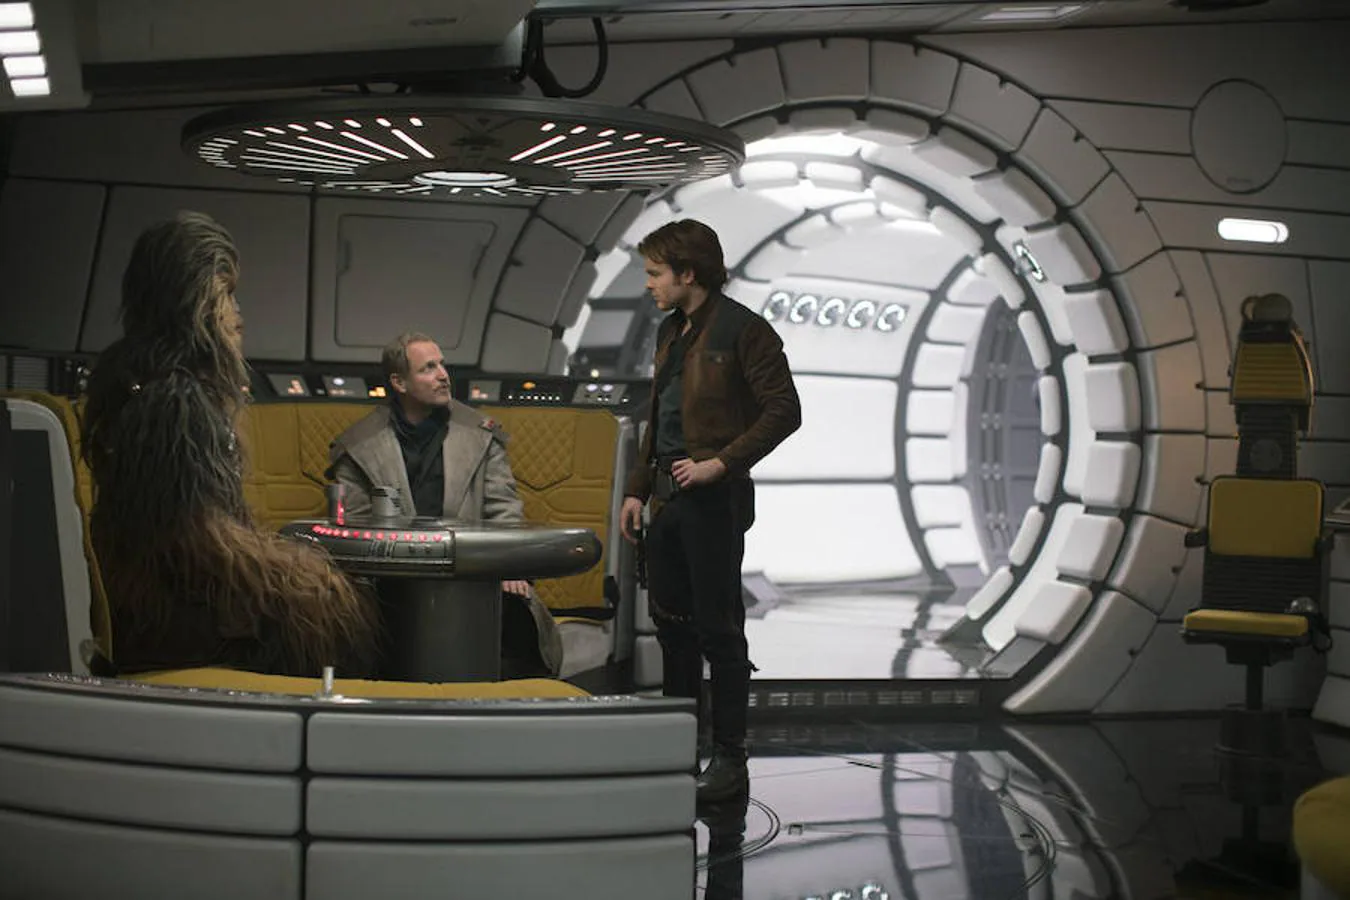 Joonas Suotamo se mete en la piel (y los pelos) de Chewbacca, junto con Woody Harrelson (Beckett) y Alden Ehrenreich (Han Solo). 